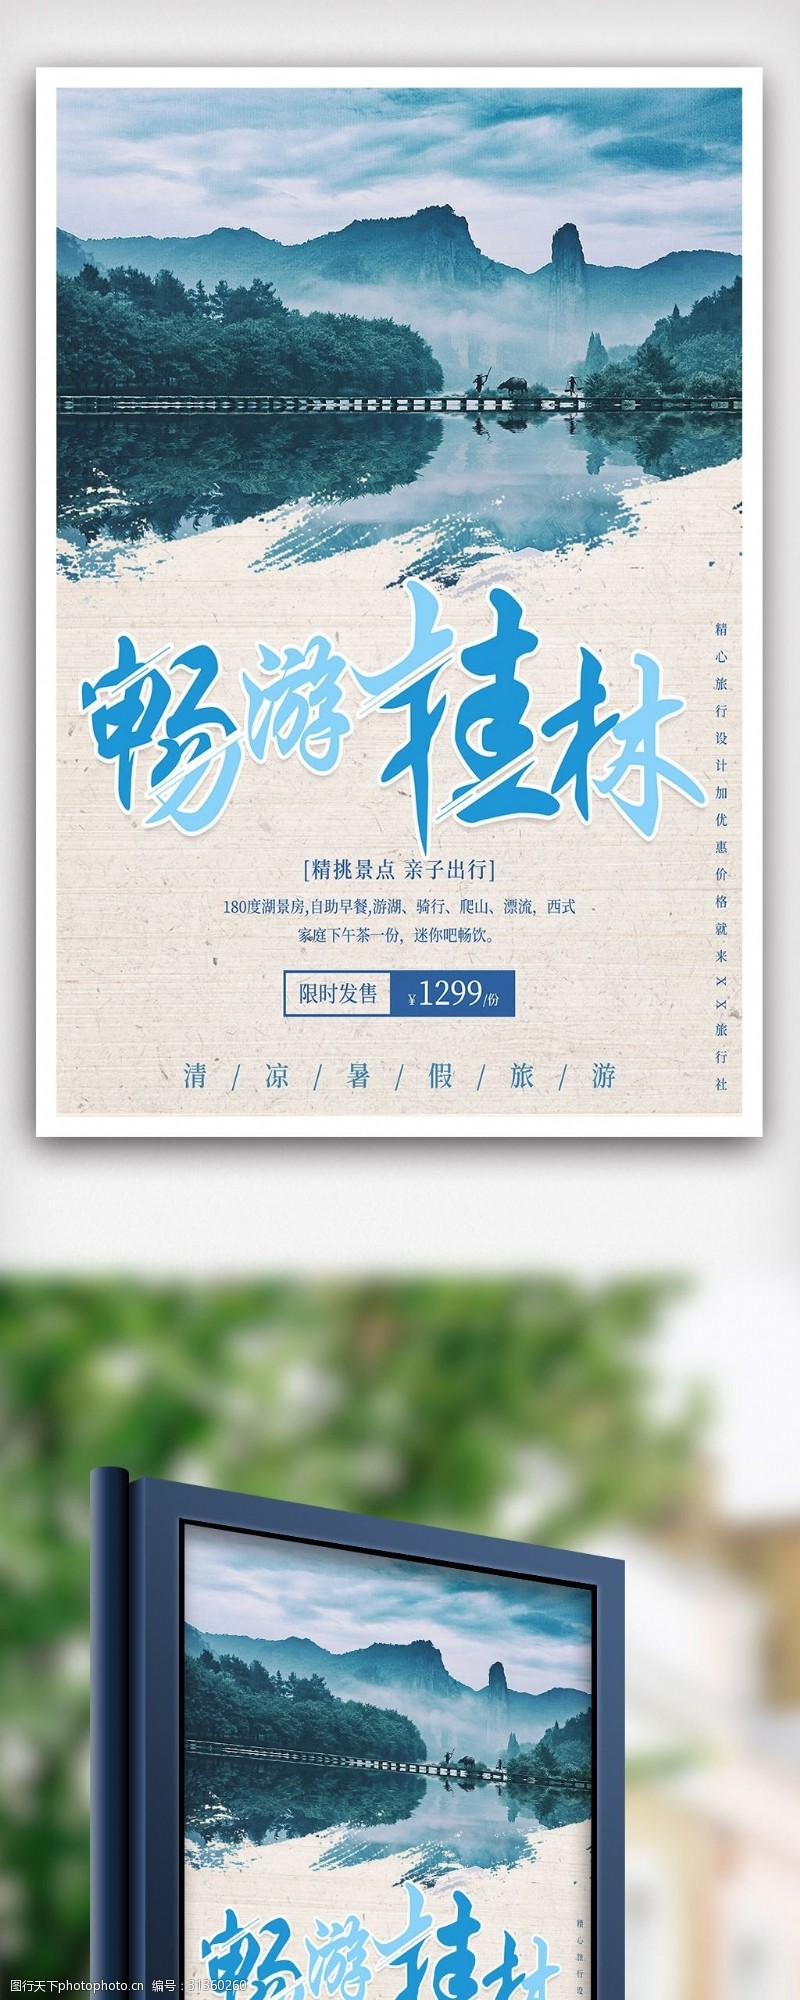 甲天下最美桂林暑期旅游海报